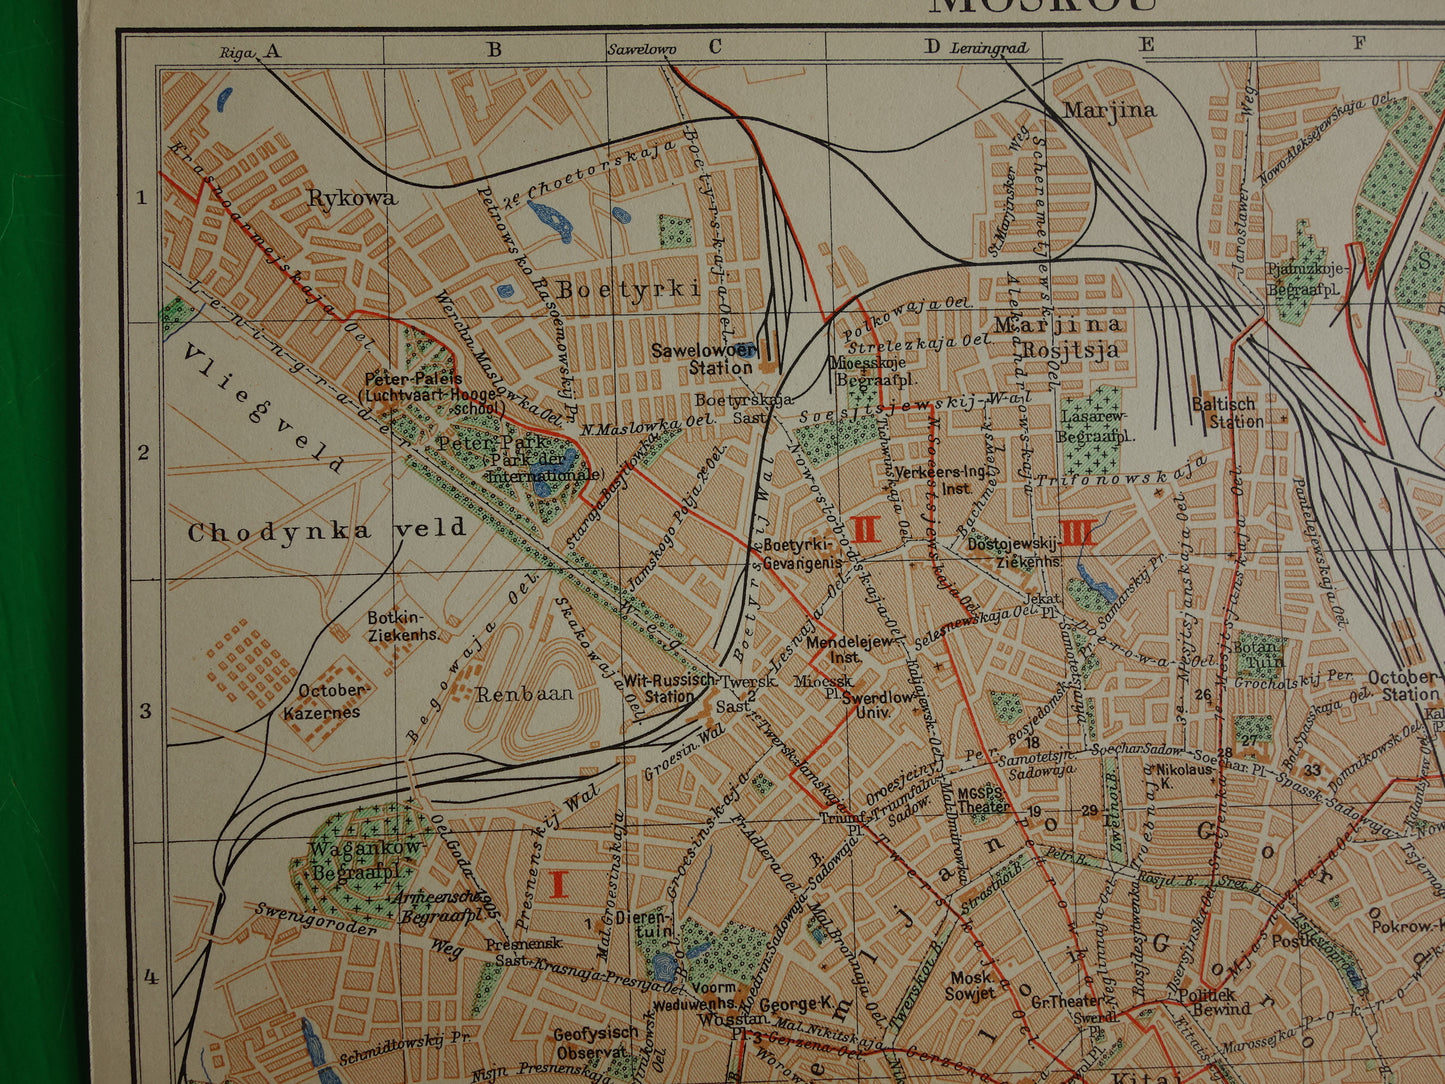 MOSKOU Vintage kaart van Moskou Rusland uit 1937 originele oude Nederlandse plattegrond